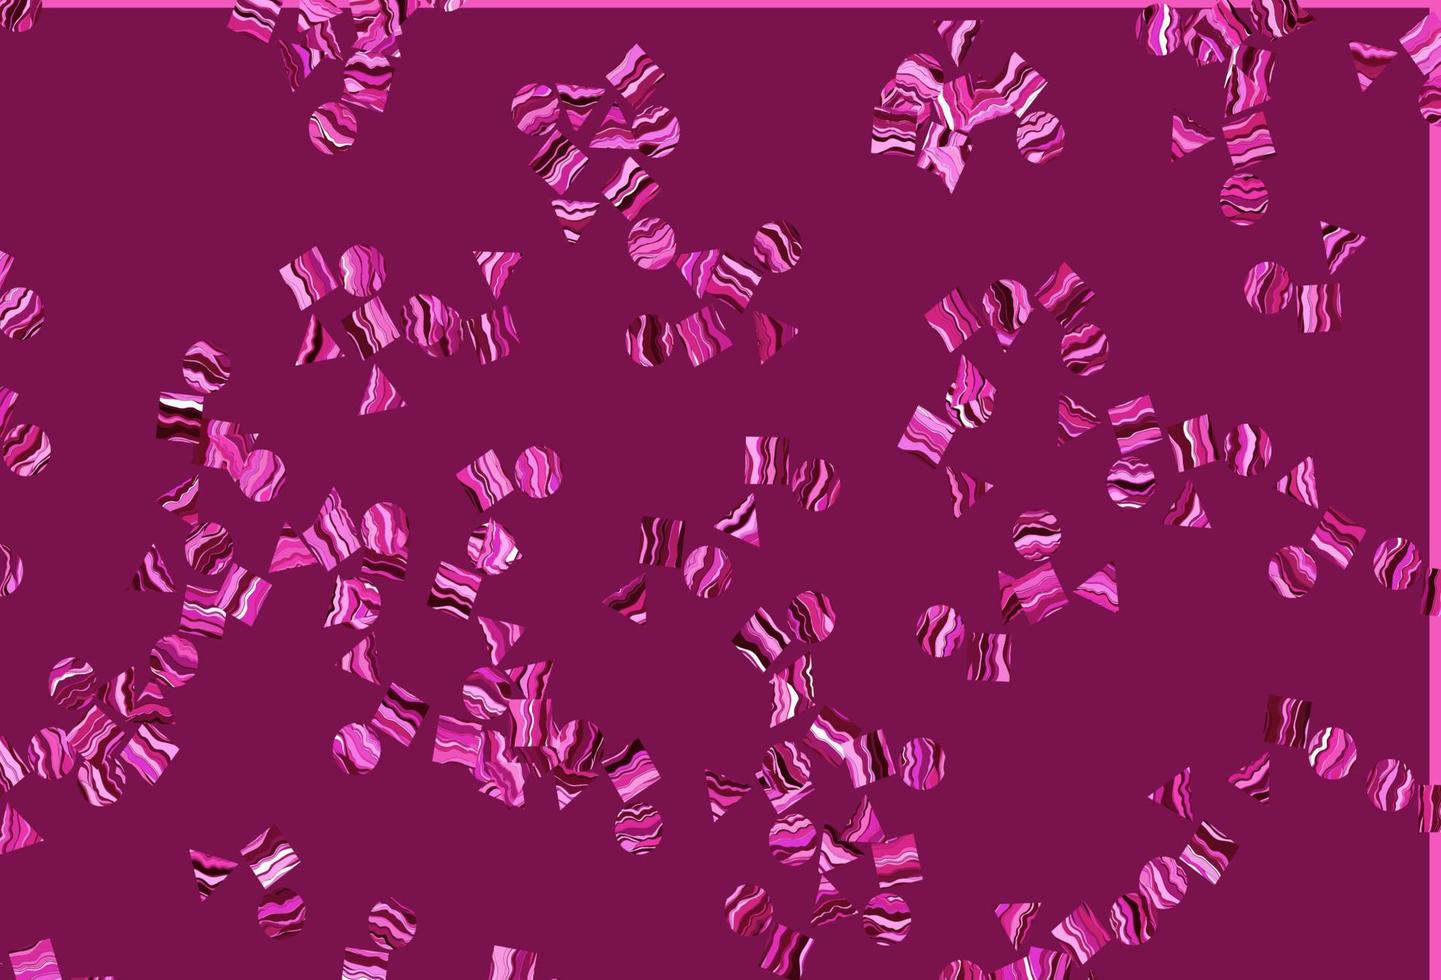 textura vector rosa claro em estilo poli com círculos, cubos.